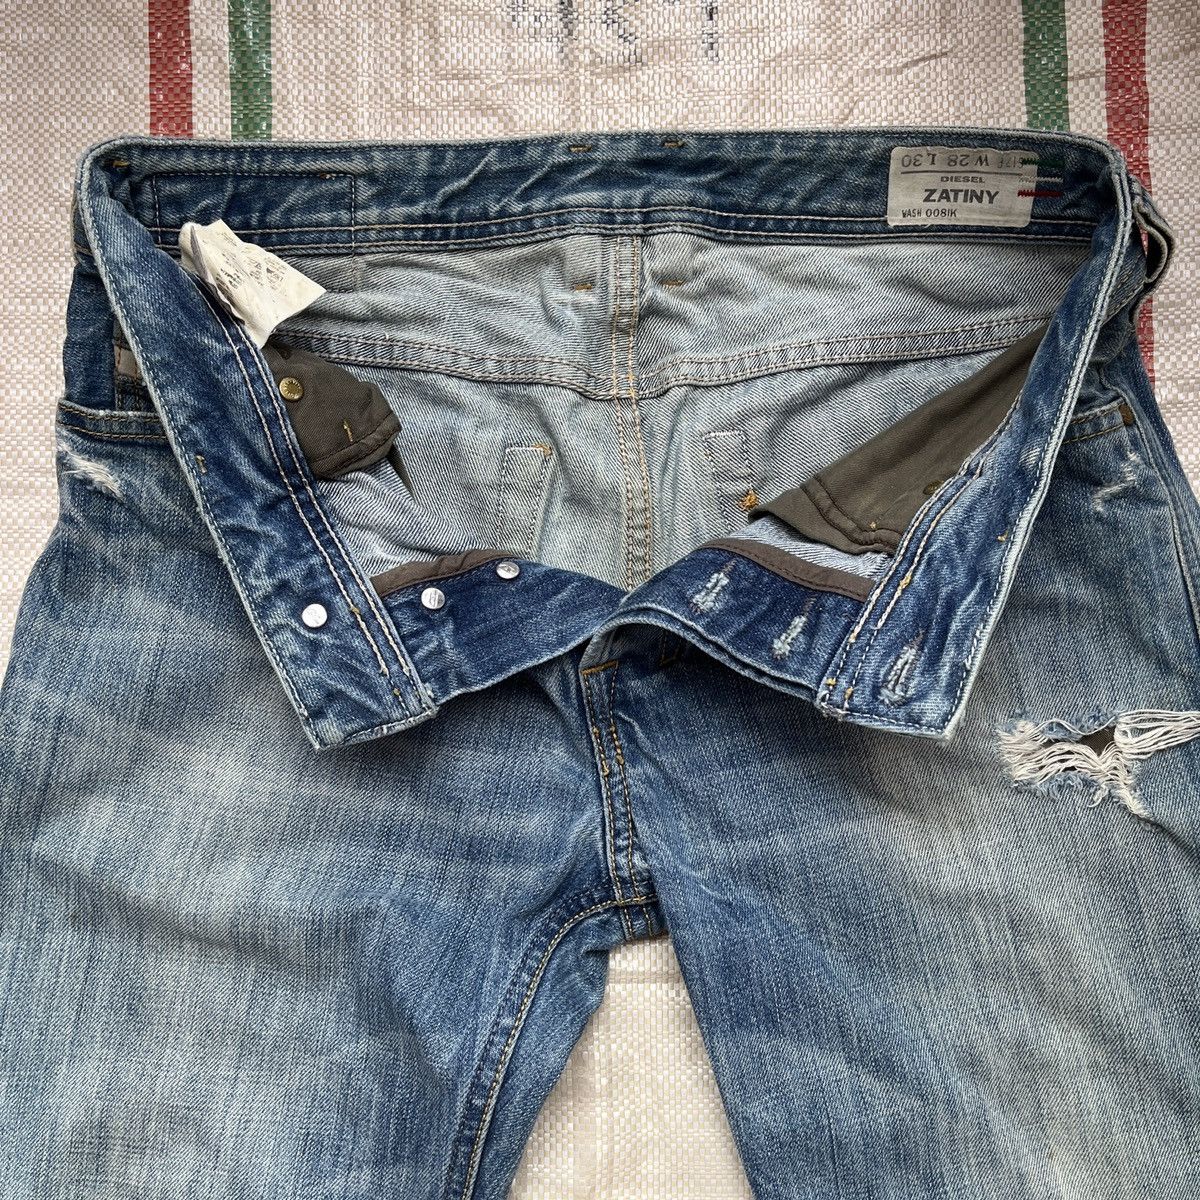 Distressed Diesel Black Zatiny Denim Jeans Made In Italy - 11